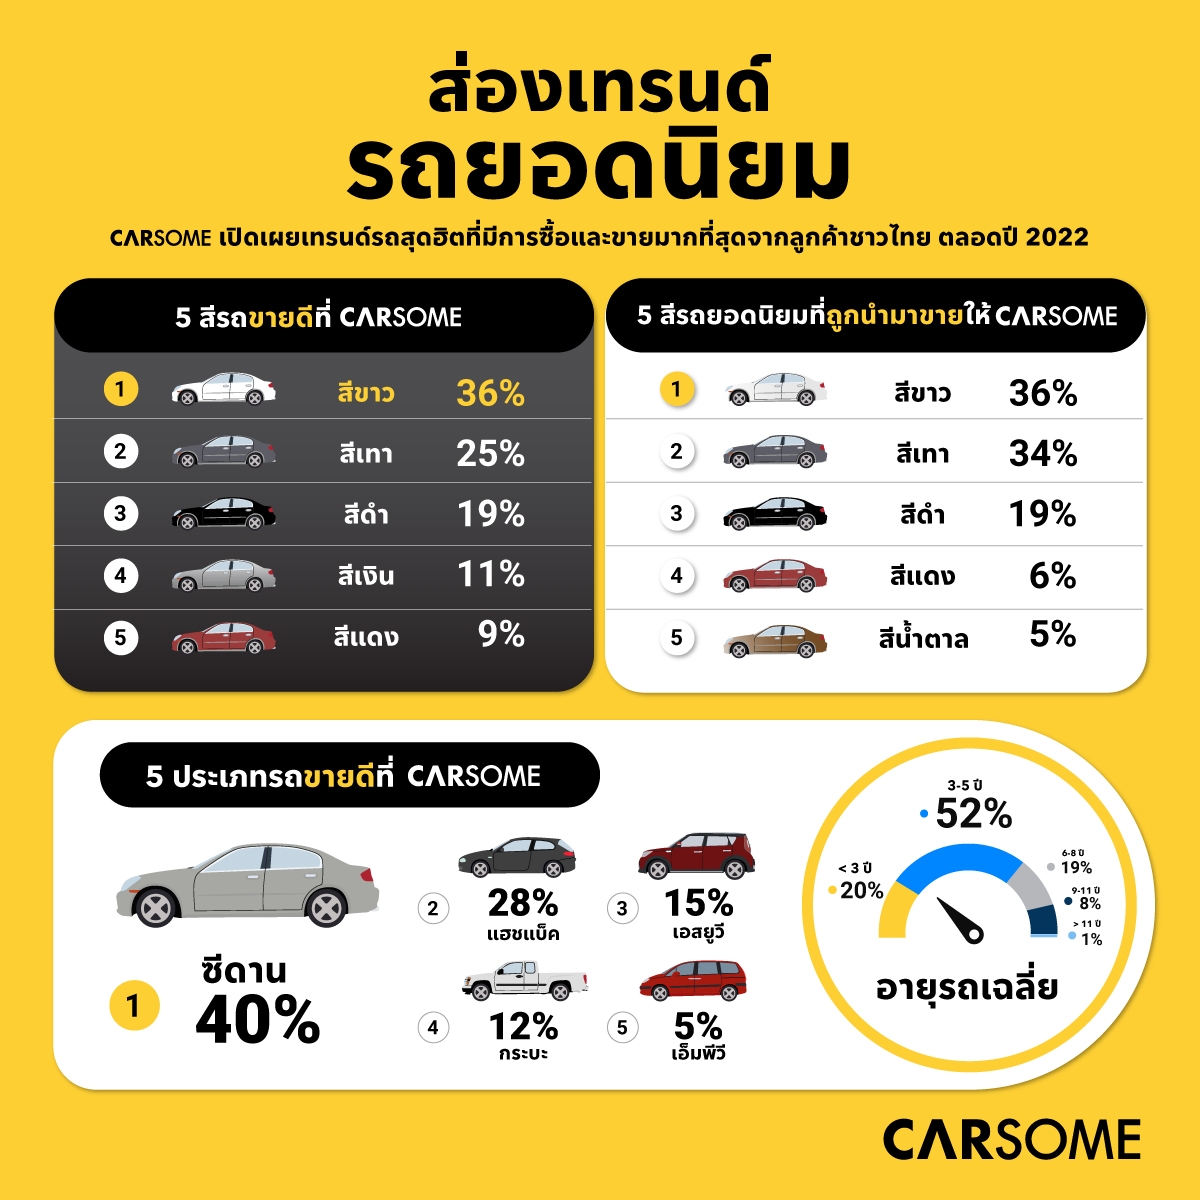 ส่องเทรนด์รถสุดฮิตของคนไทย ที่ซื้อ-ขาย กันมากที่สุด ในปี 2565